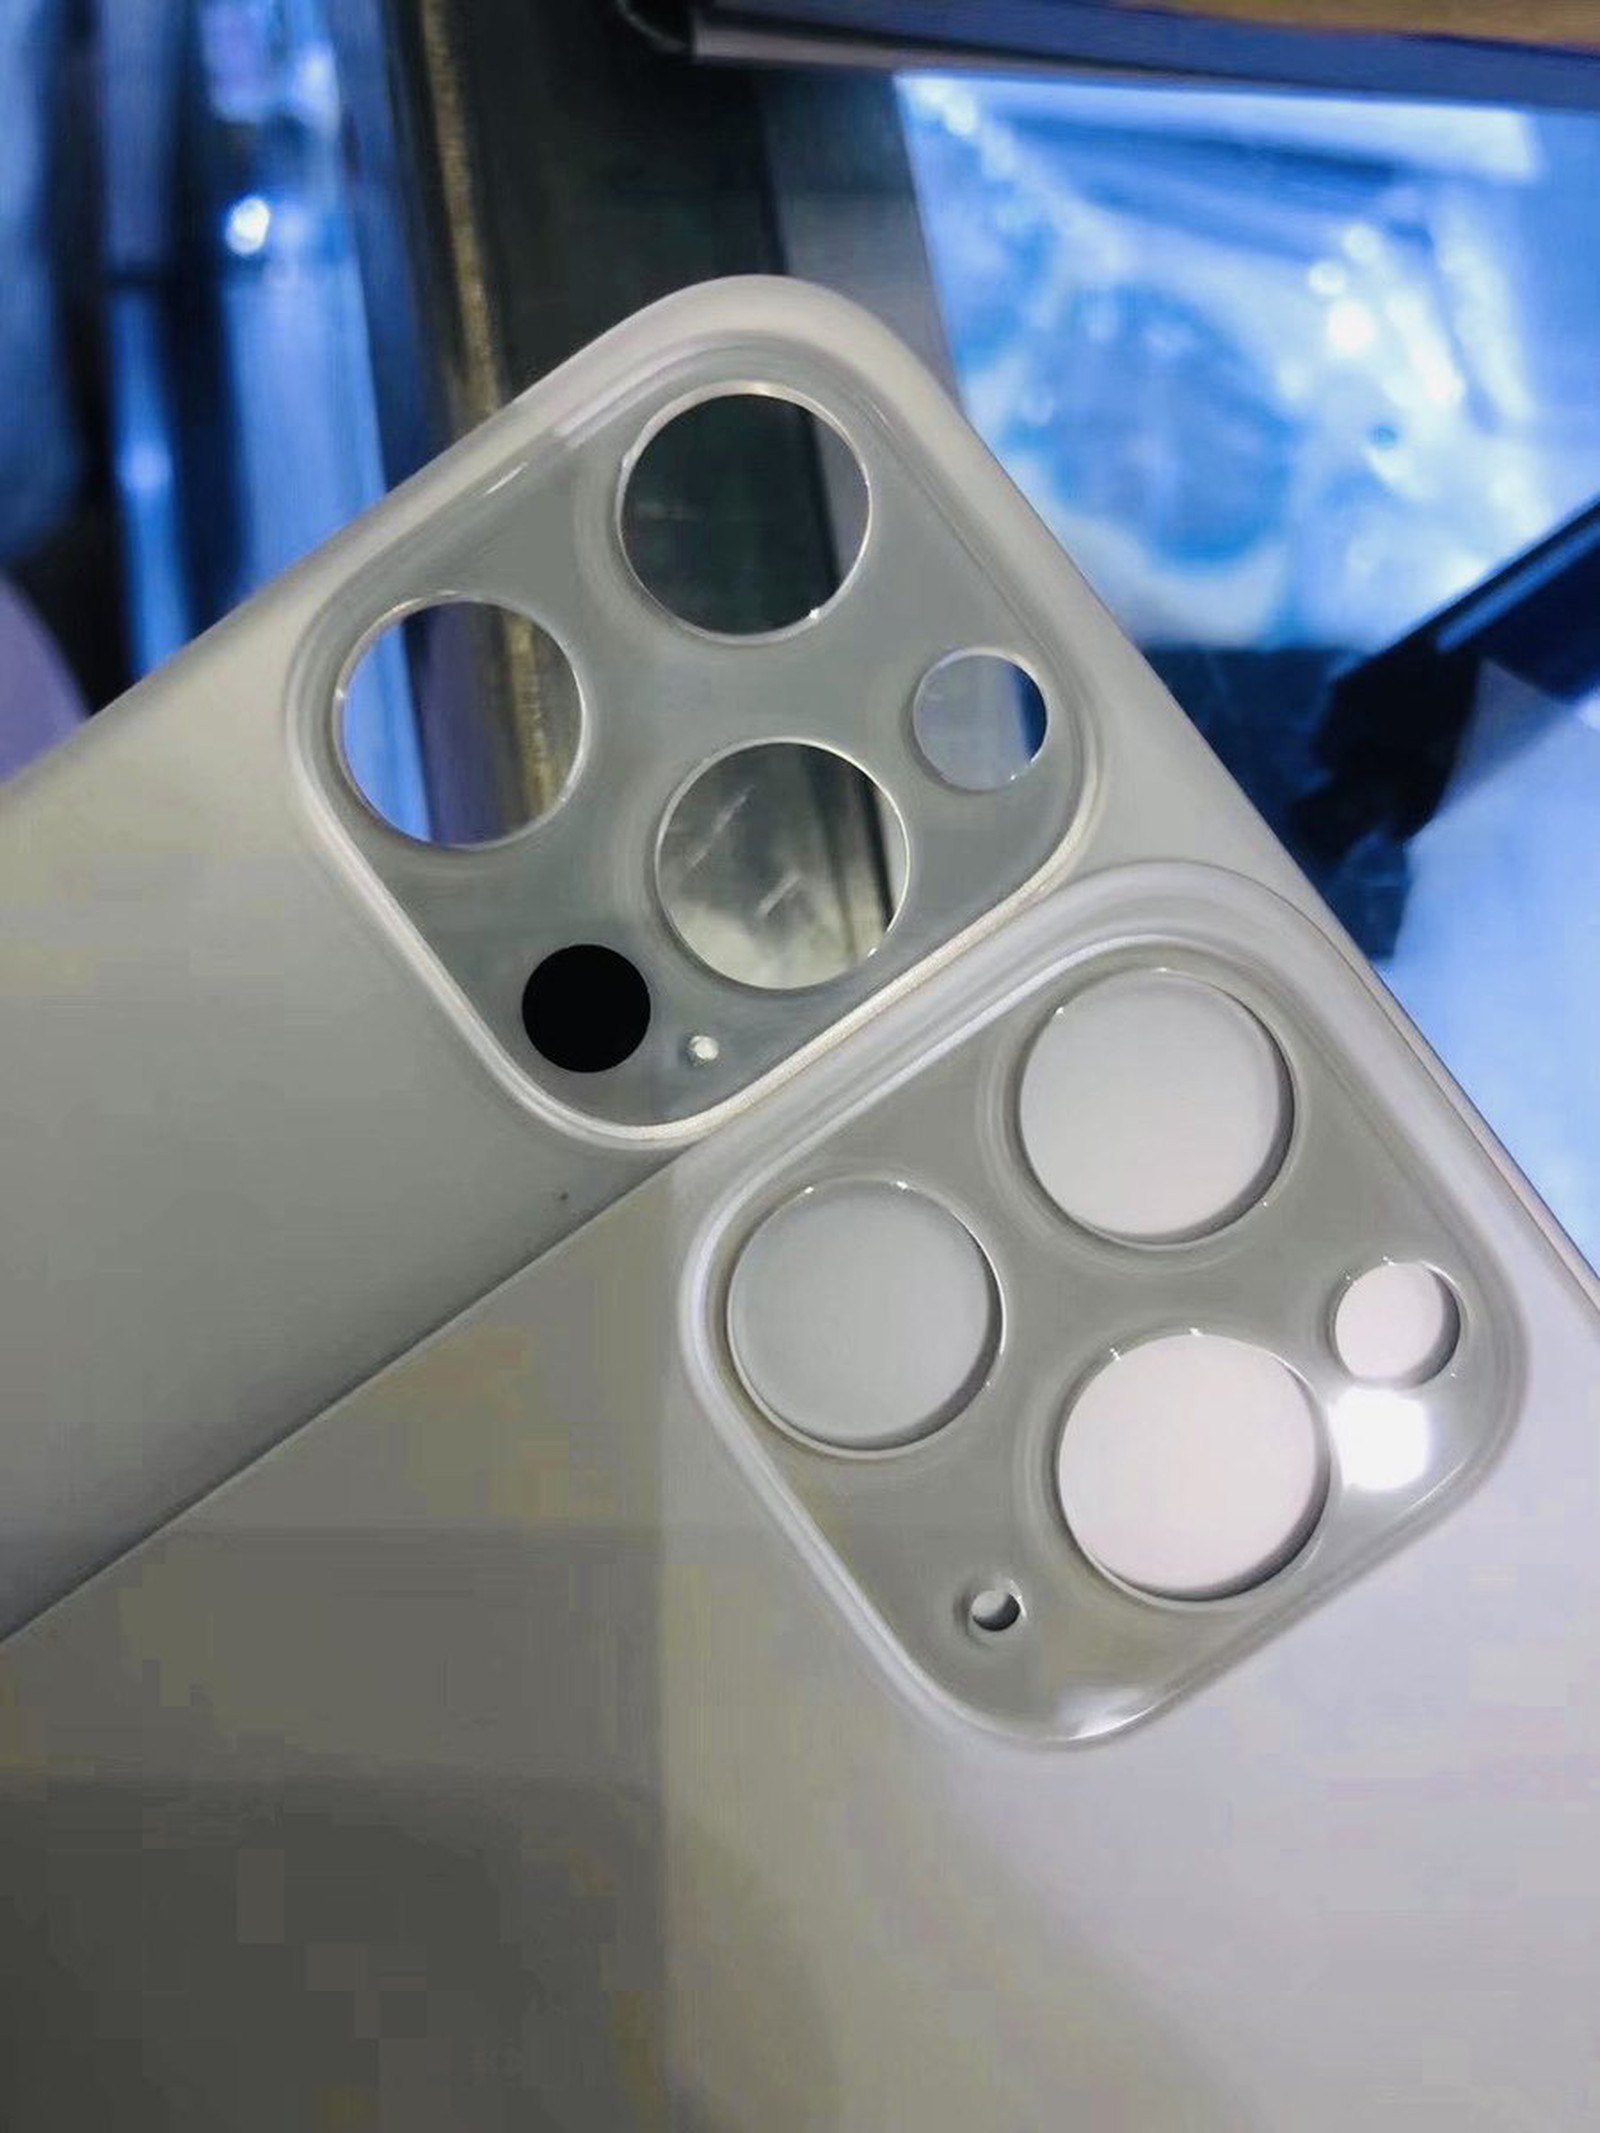 ｢iPhone 12 Pro｣のリアガラスパネルが流出か − LiDARセンサー用とみられる穴が存在